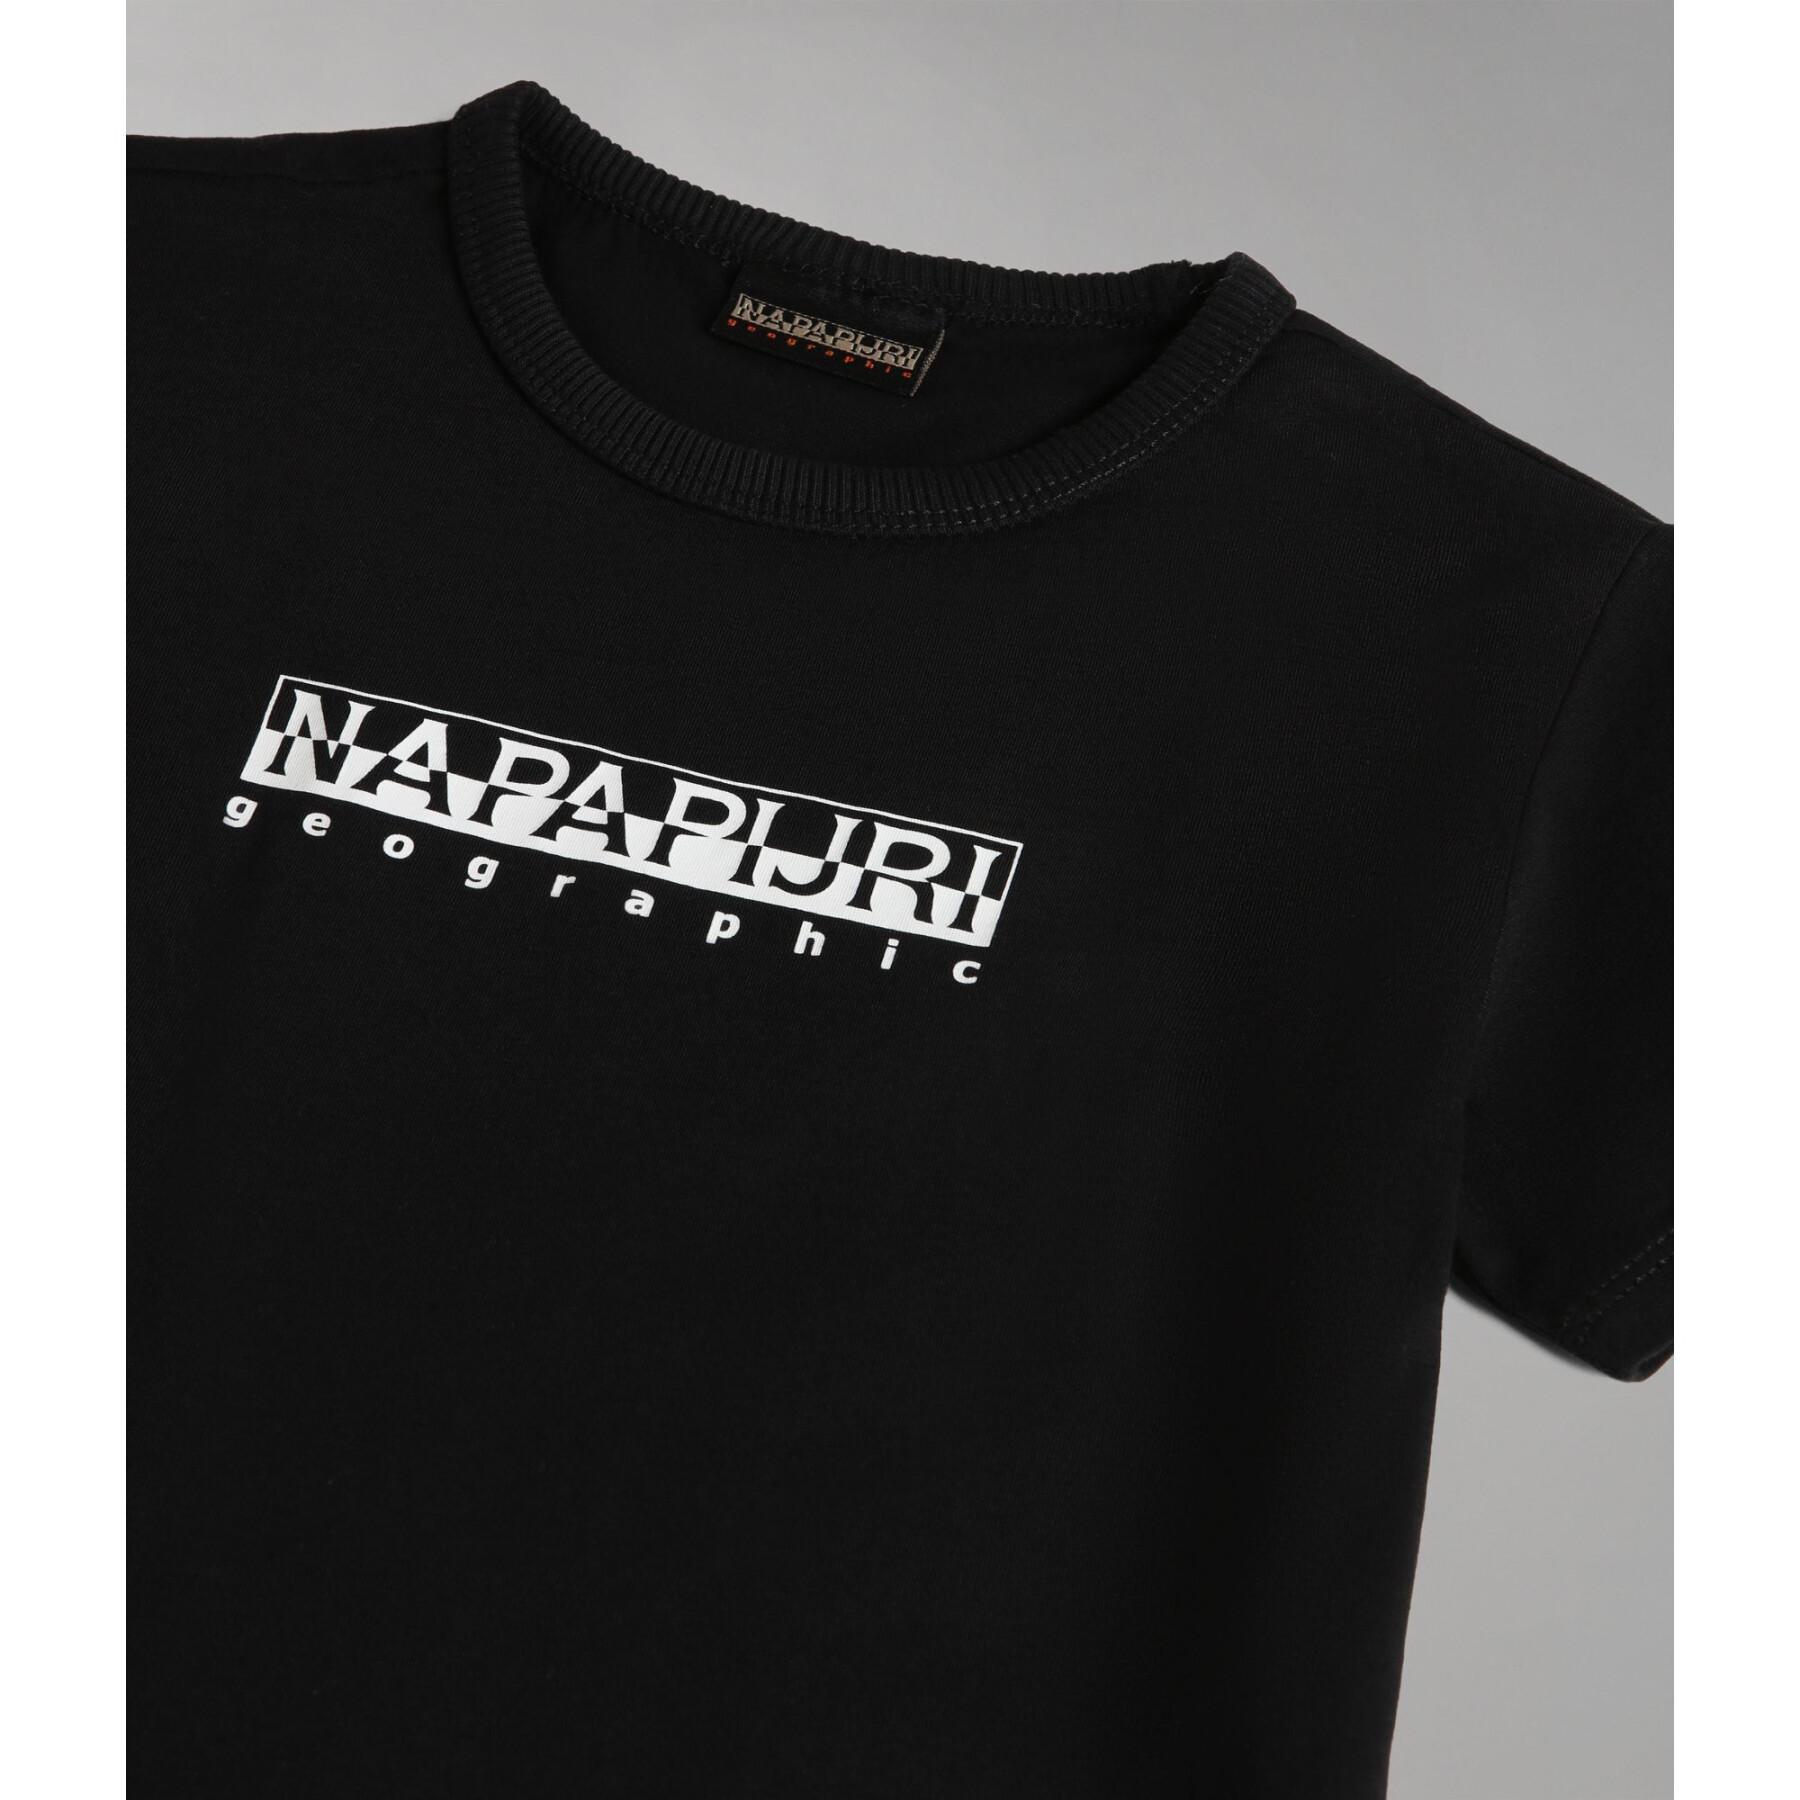 Camiseta infantil Napapijri Box